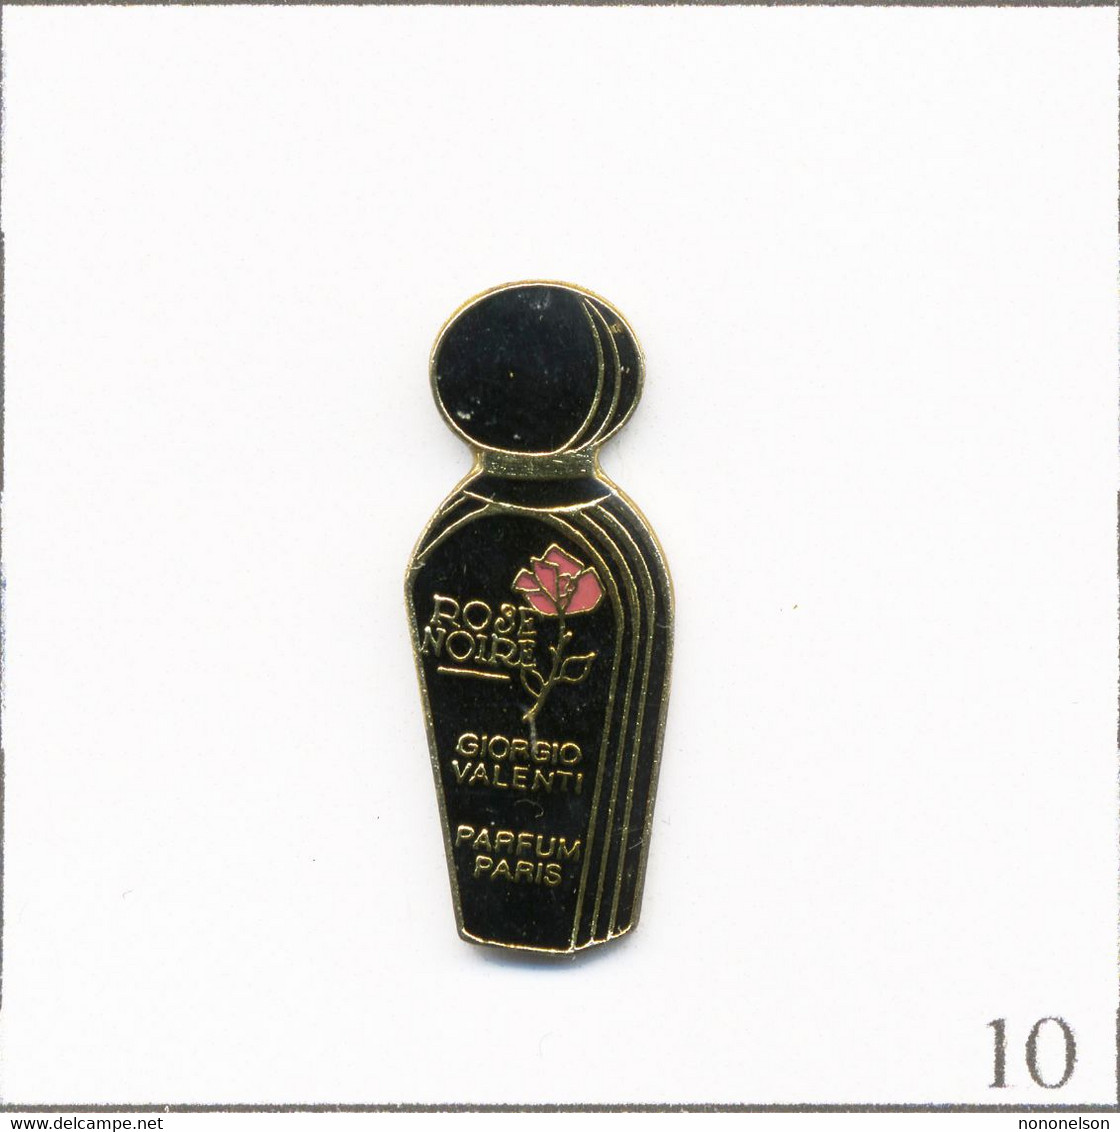 Pin's Mode / Beauté - Parfum “Rose Noire“ De Giorgio Valenti. Estampillé Formula. Epoxy. T775-10 - Parfums